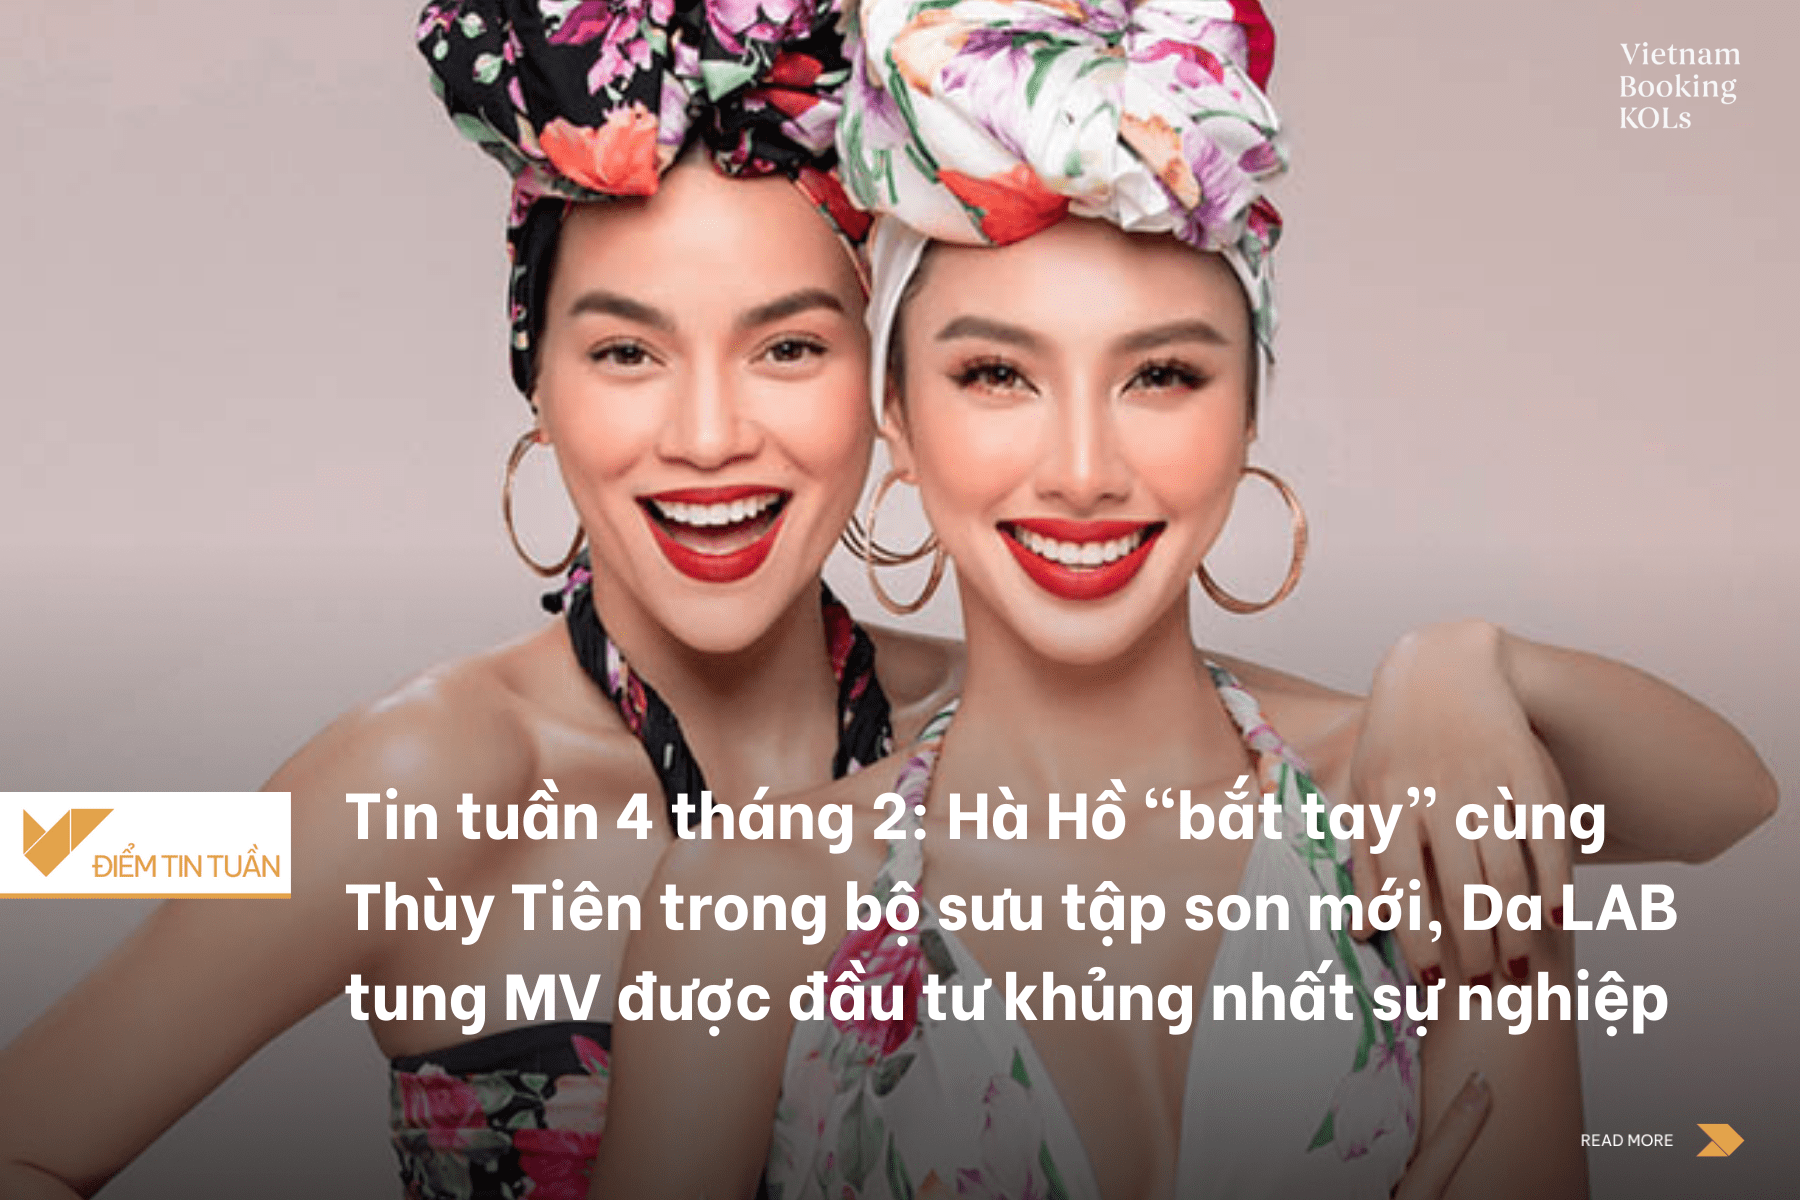 Tin tuần 4 tháng 2: Hà Hồ “bắt tay” cùng Thùy Tiên trong bộ sưu tập son mới, Da LAB tung MV được đầu tư khủng nhất sự nghiệp